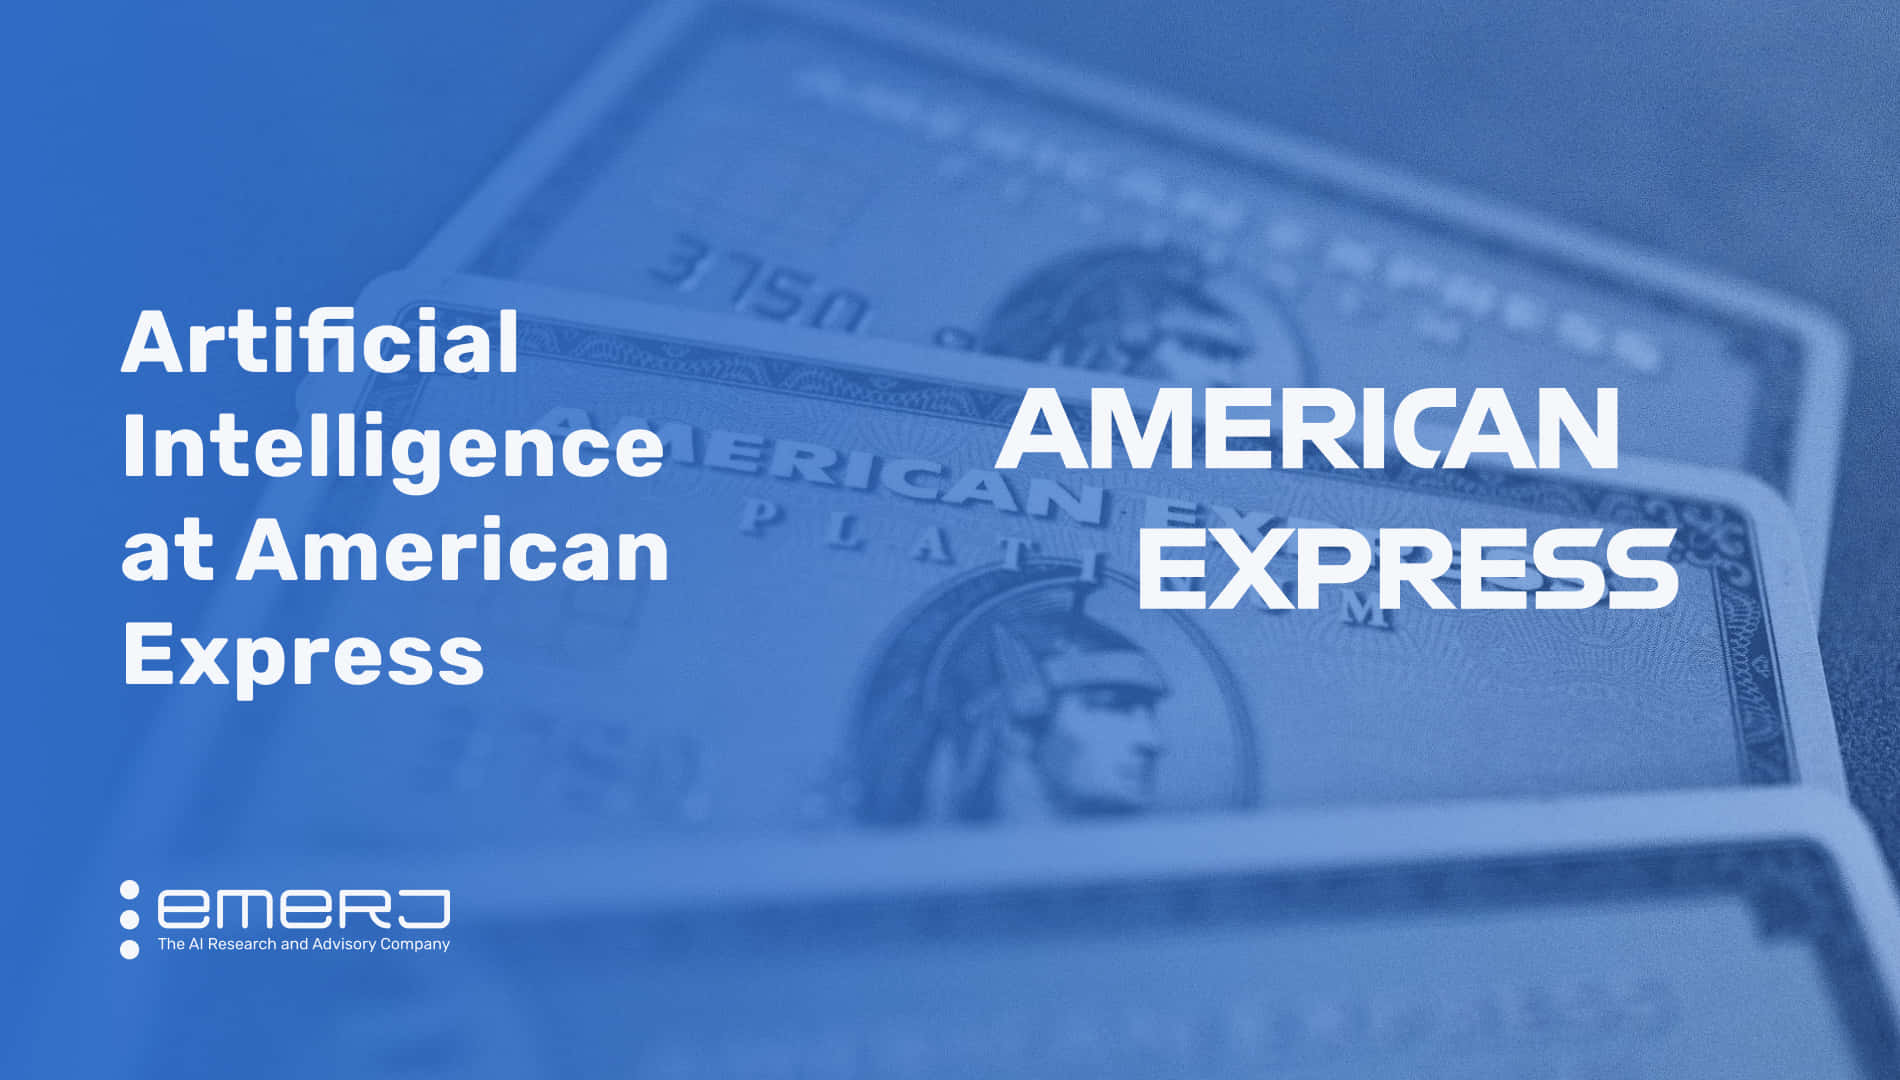 Entdeckensie Mit American Express Die Welt Der Belohnungen Neu.